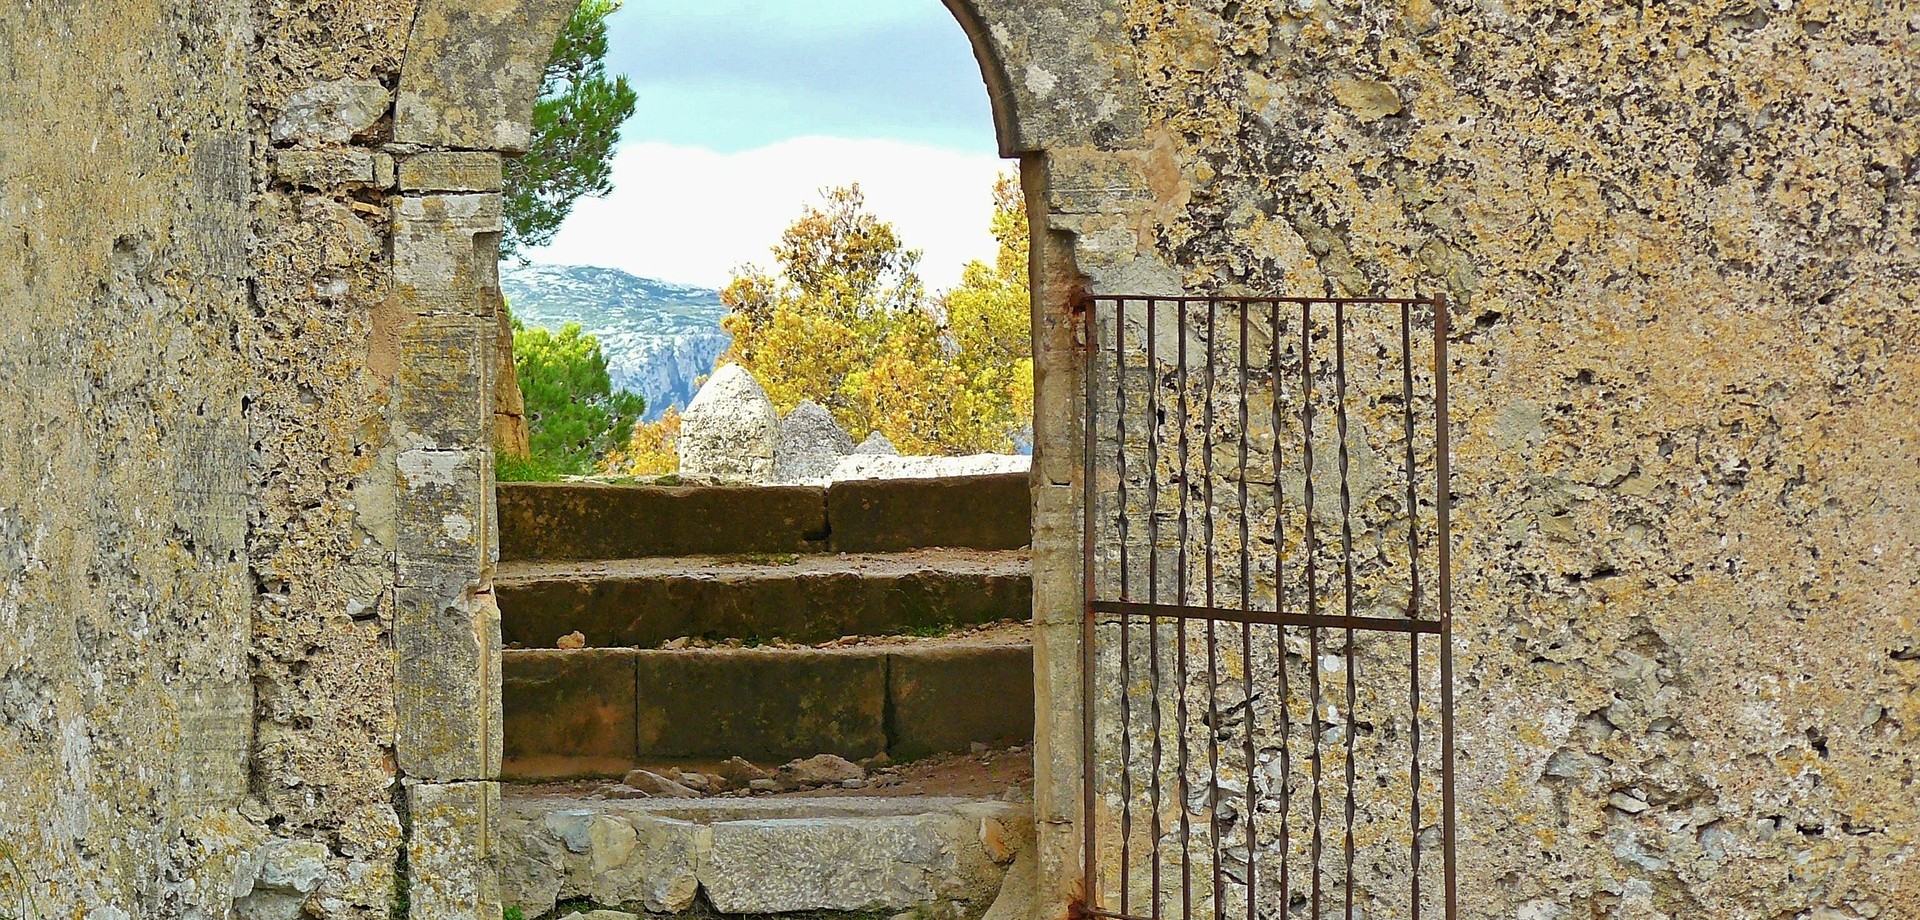 Durch eine große, karge, triste Steinmauer führt ein kleines, geöffnetes Tor in eine wunderschöne, sonnenerhellte Landschaft hinein